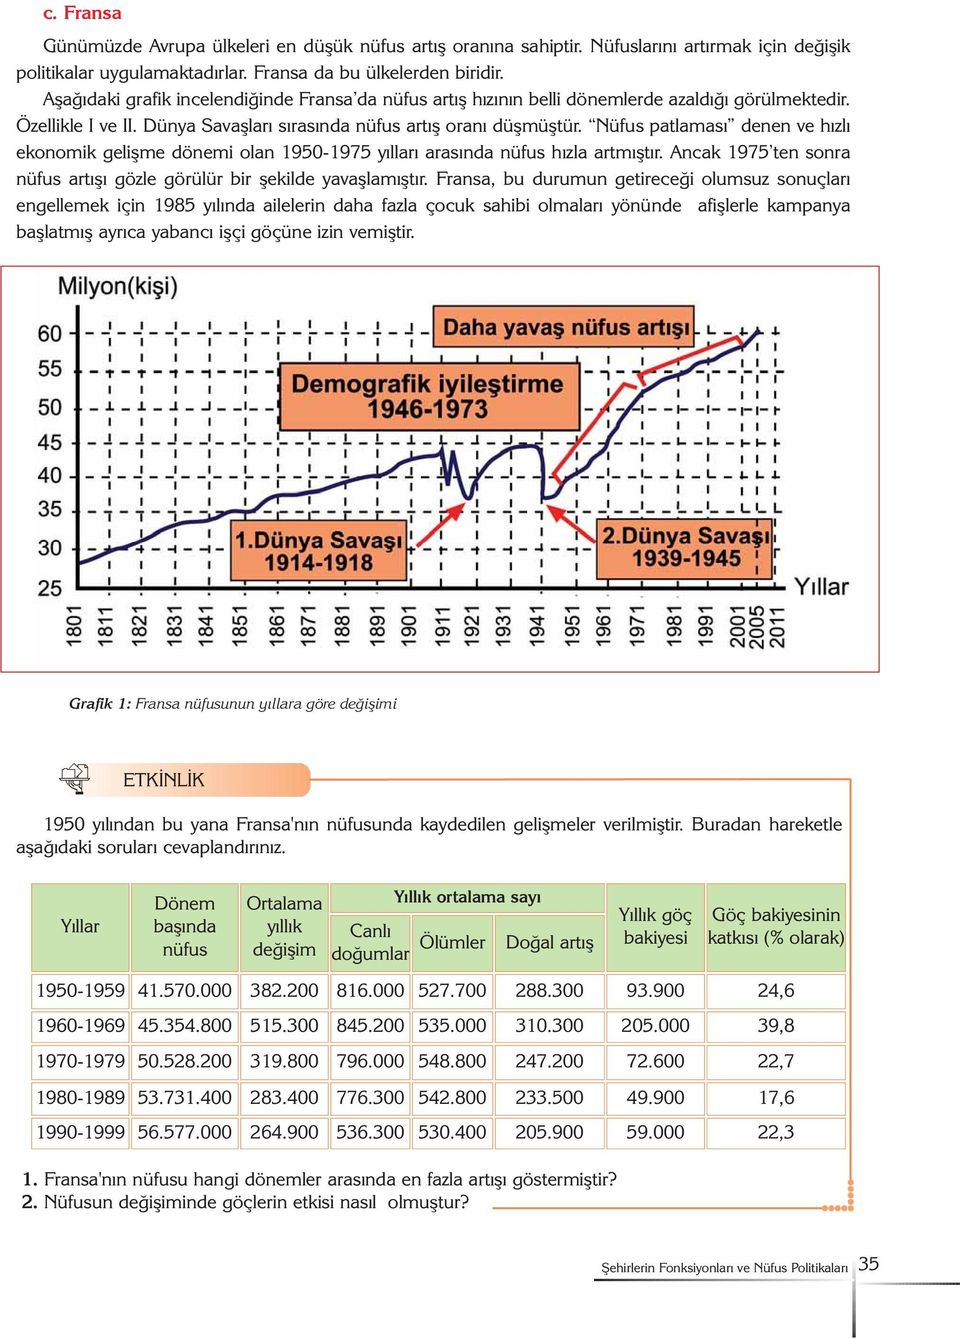 Nüfus patlamasý denen ve hýzlý ekonomik geliþme dönemi olan 1950-1975 yýllarý arasýnda nüfus hýzla artmýþtýr. Ancak 1975 ten sonra nüfus artýþý gözle görülür bir þekilde yavaþlamýþtýr.